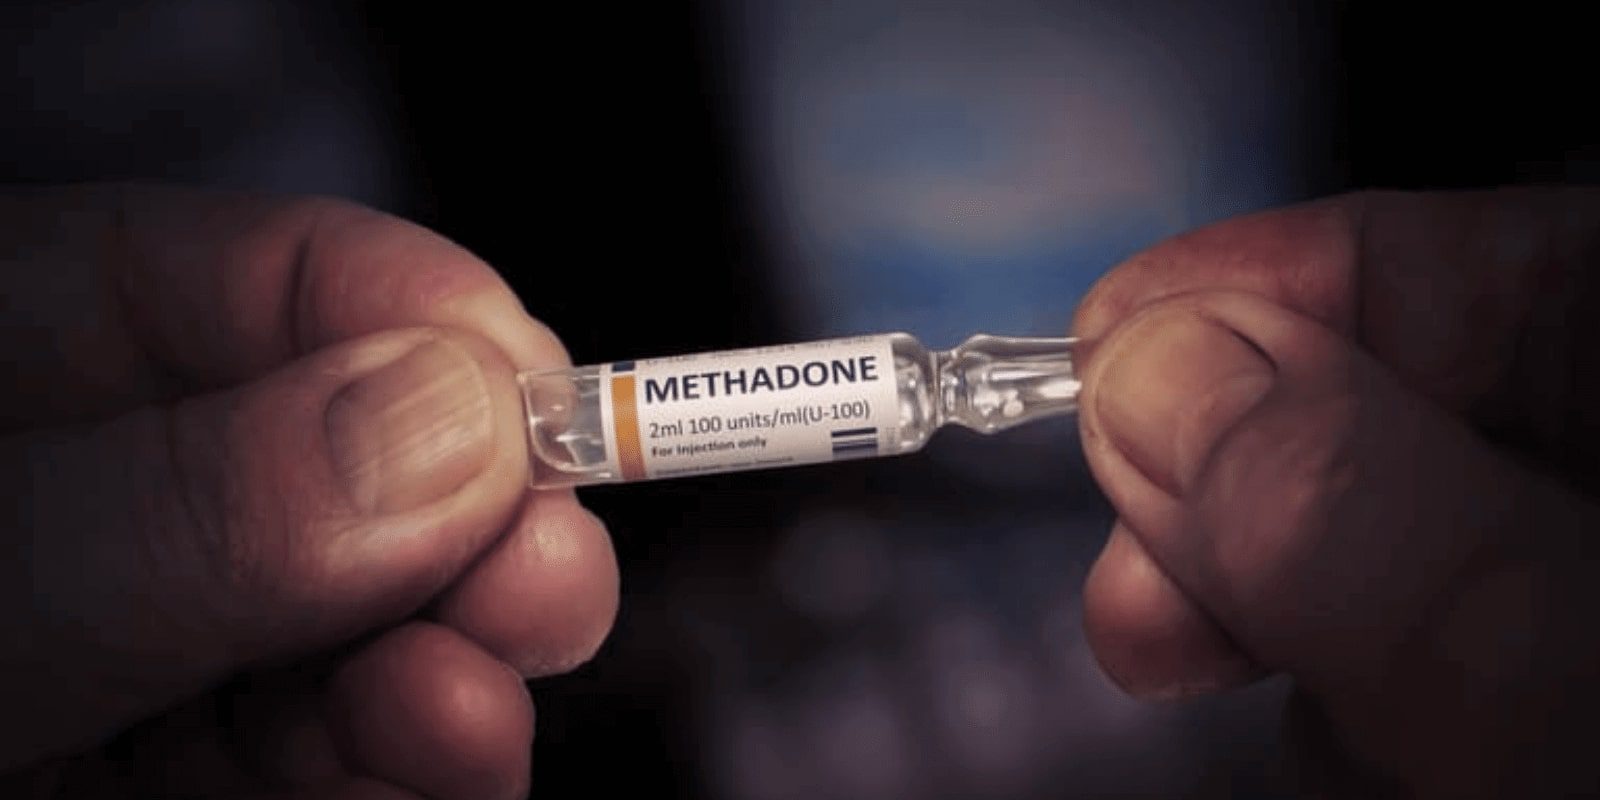 Hands holding methadone bottle